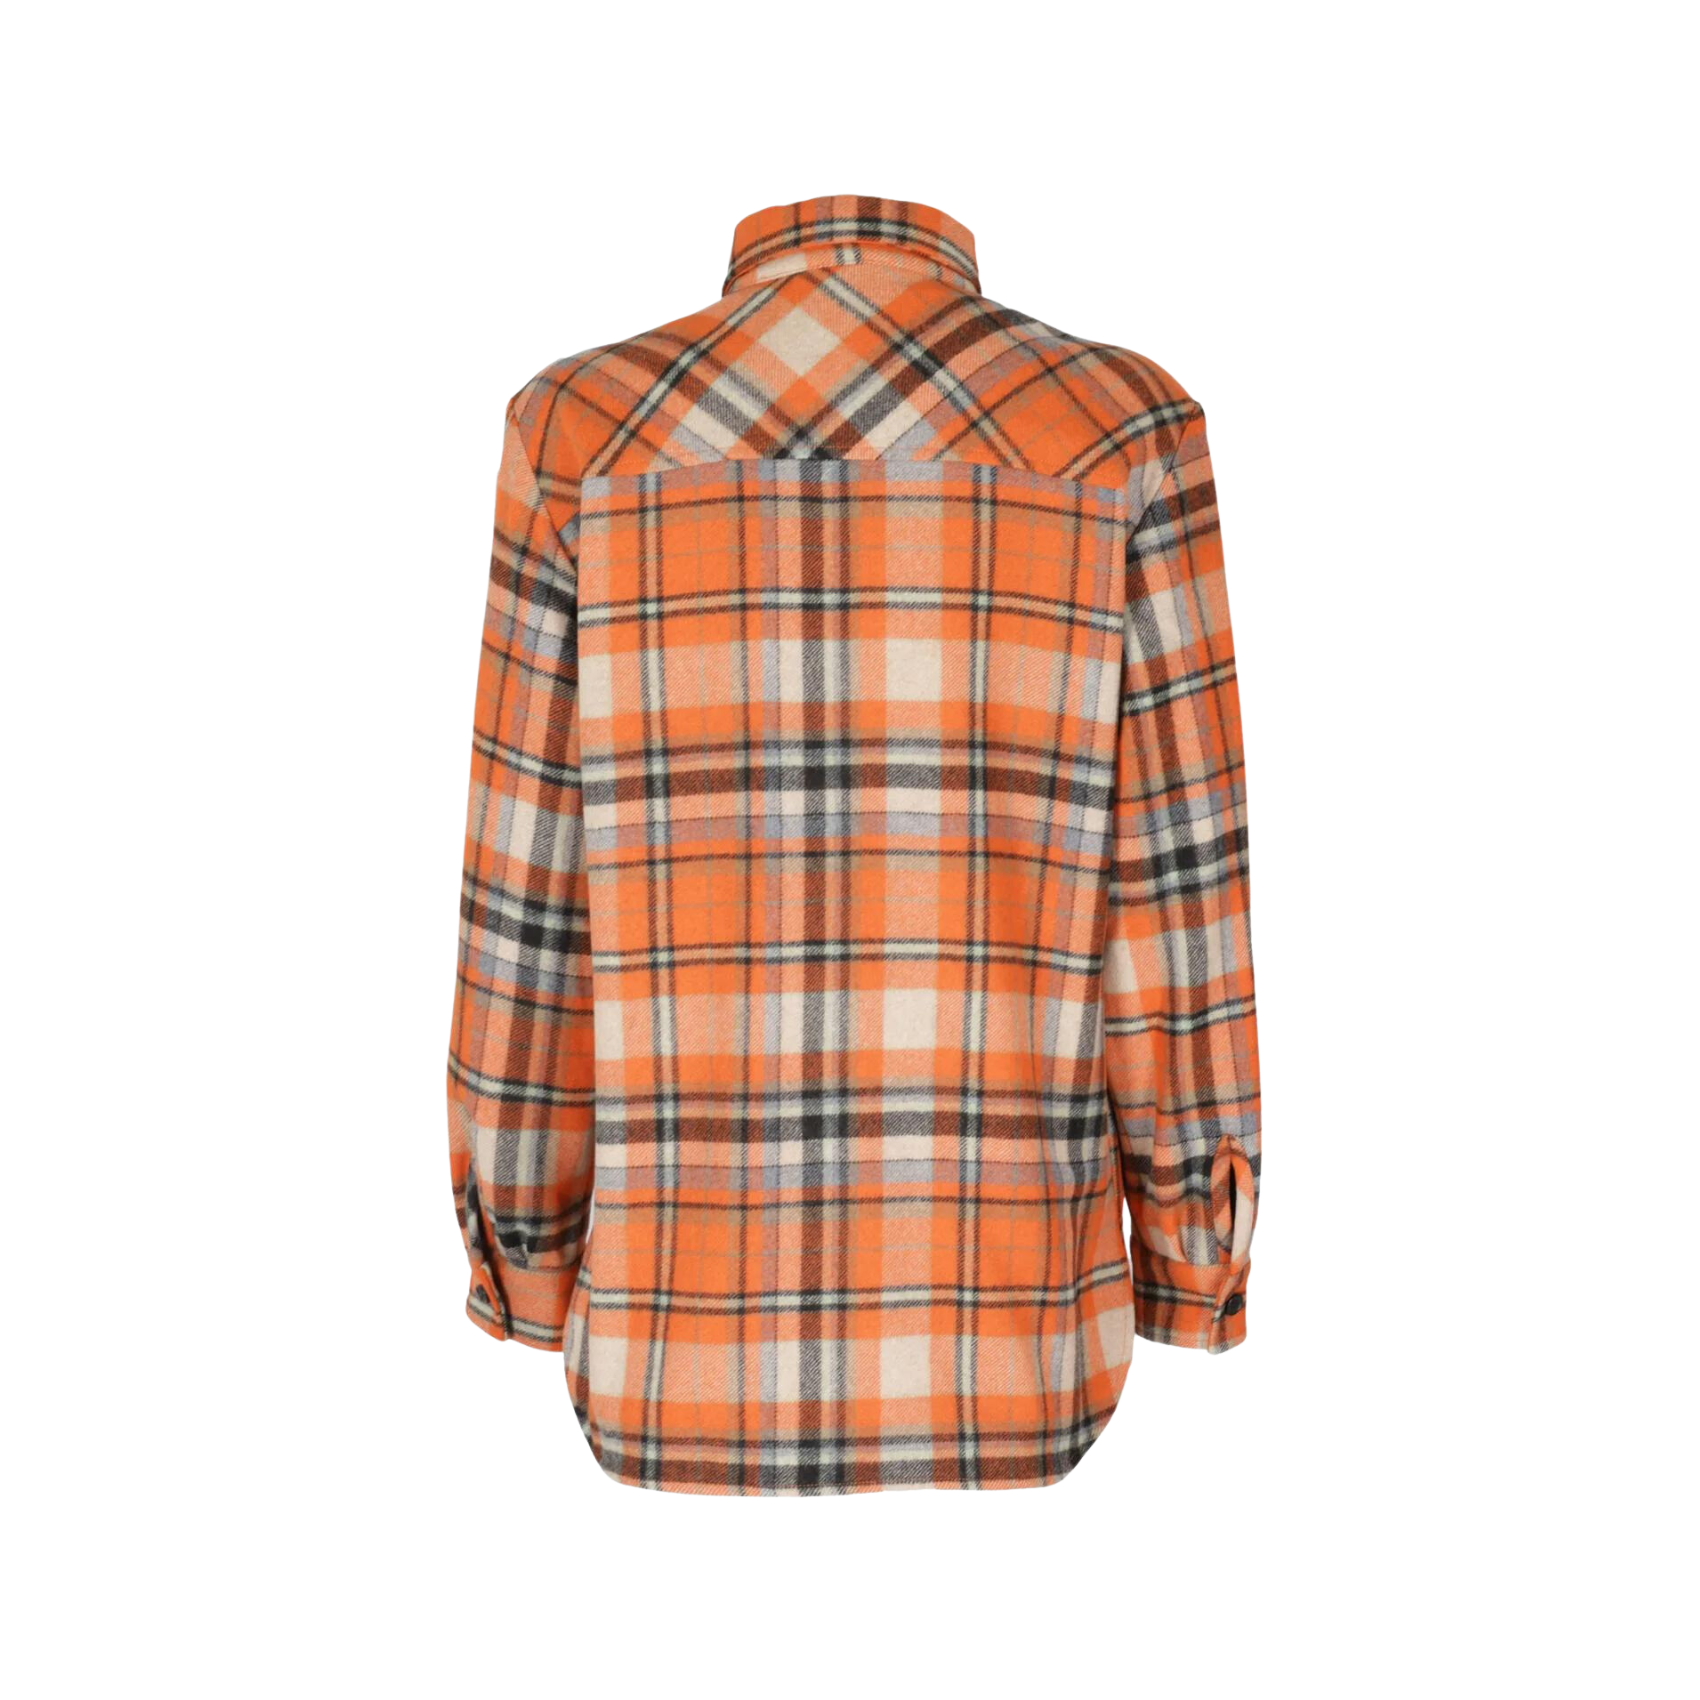 Janis Jacket Shirt - Orange